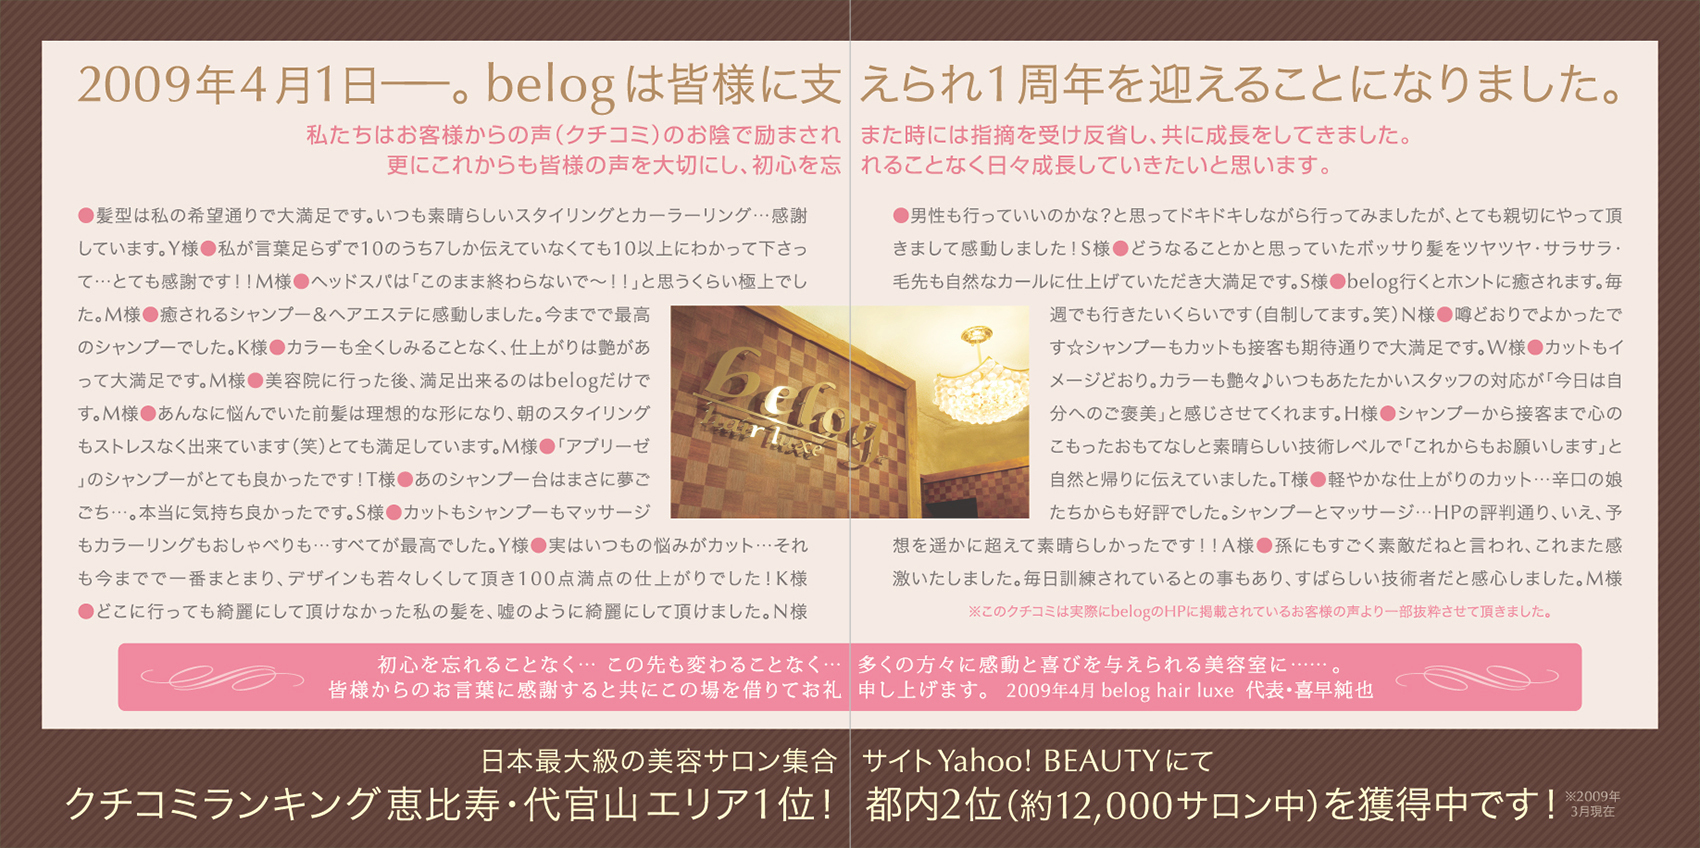 美容室『belog』様のリーフレット（折りパンフレット）画像